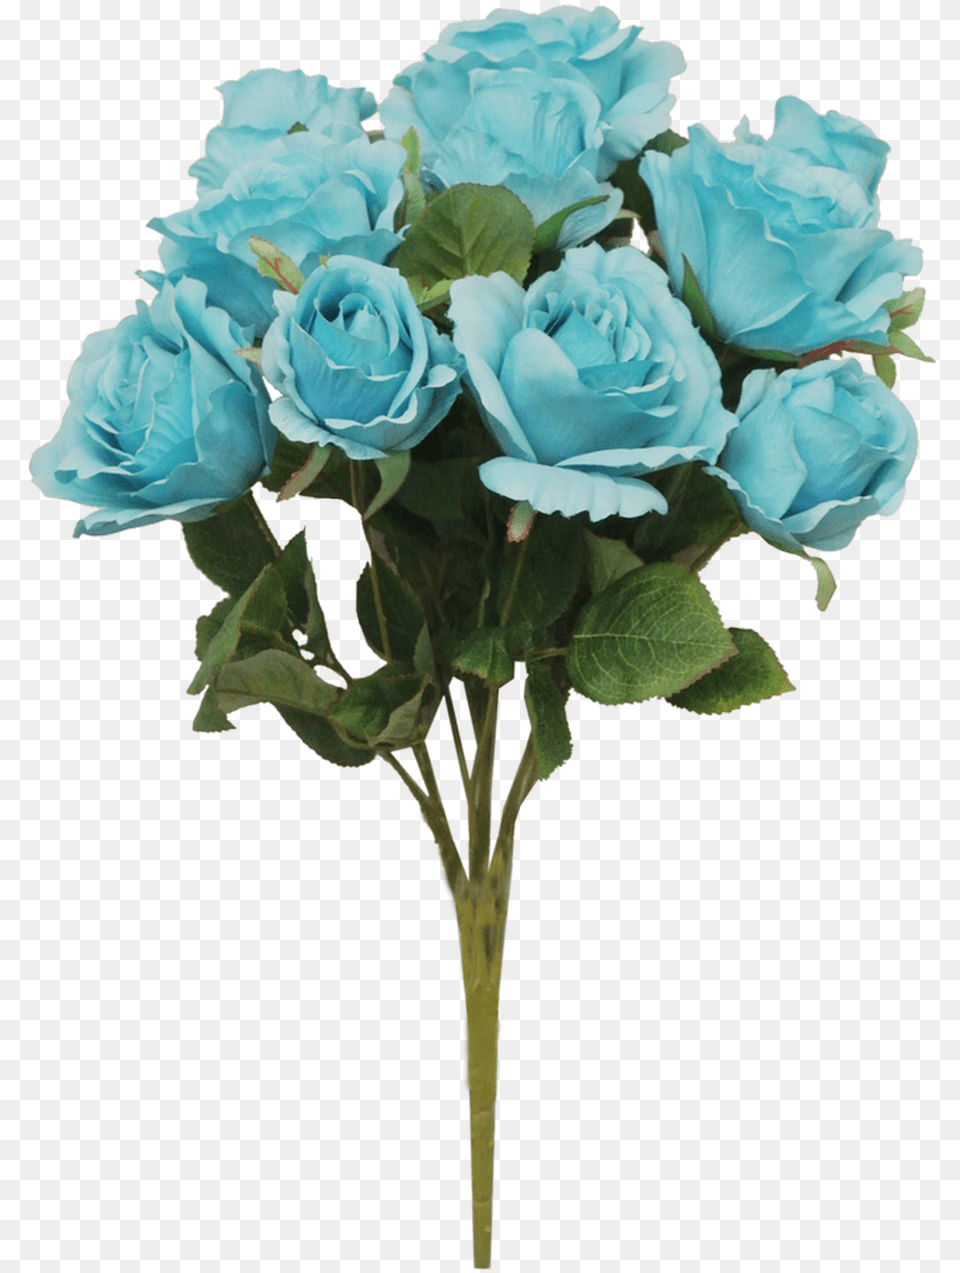 Turquoise Garden Roses, Flower, Flower Arrangement, Flower Bouquet, Plant Free Transparent Png